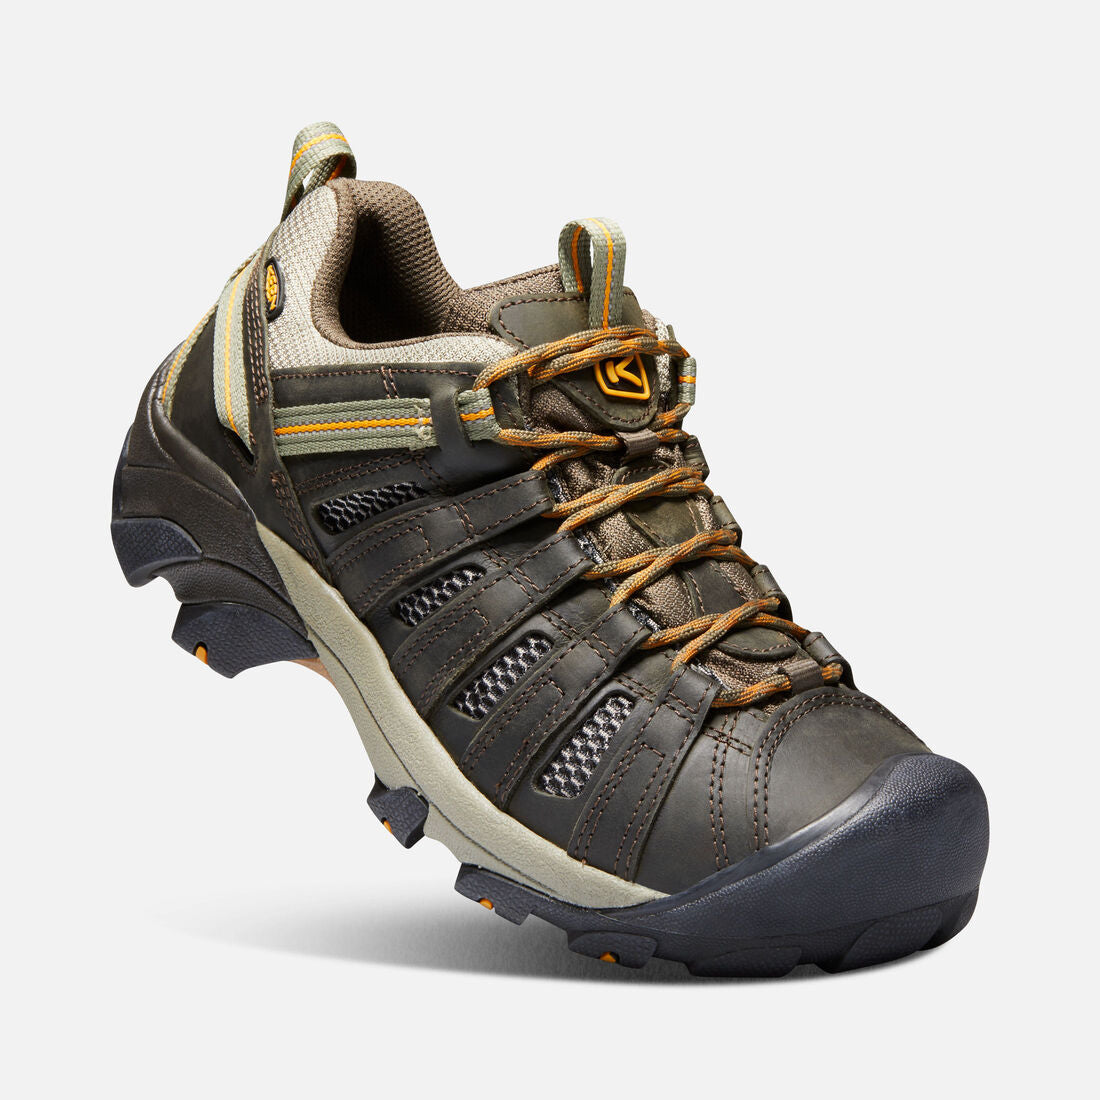 Keen Men's Voyageur Hiking Shoes Black Olive/Inco Gold